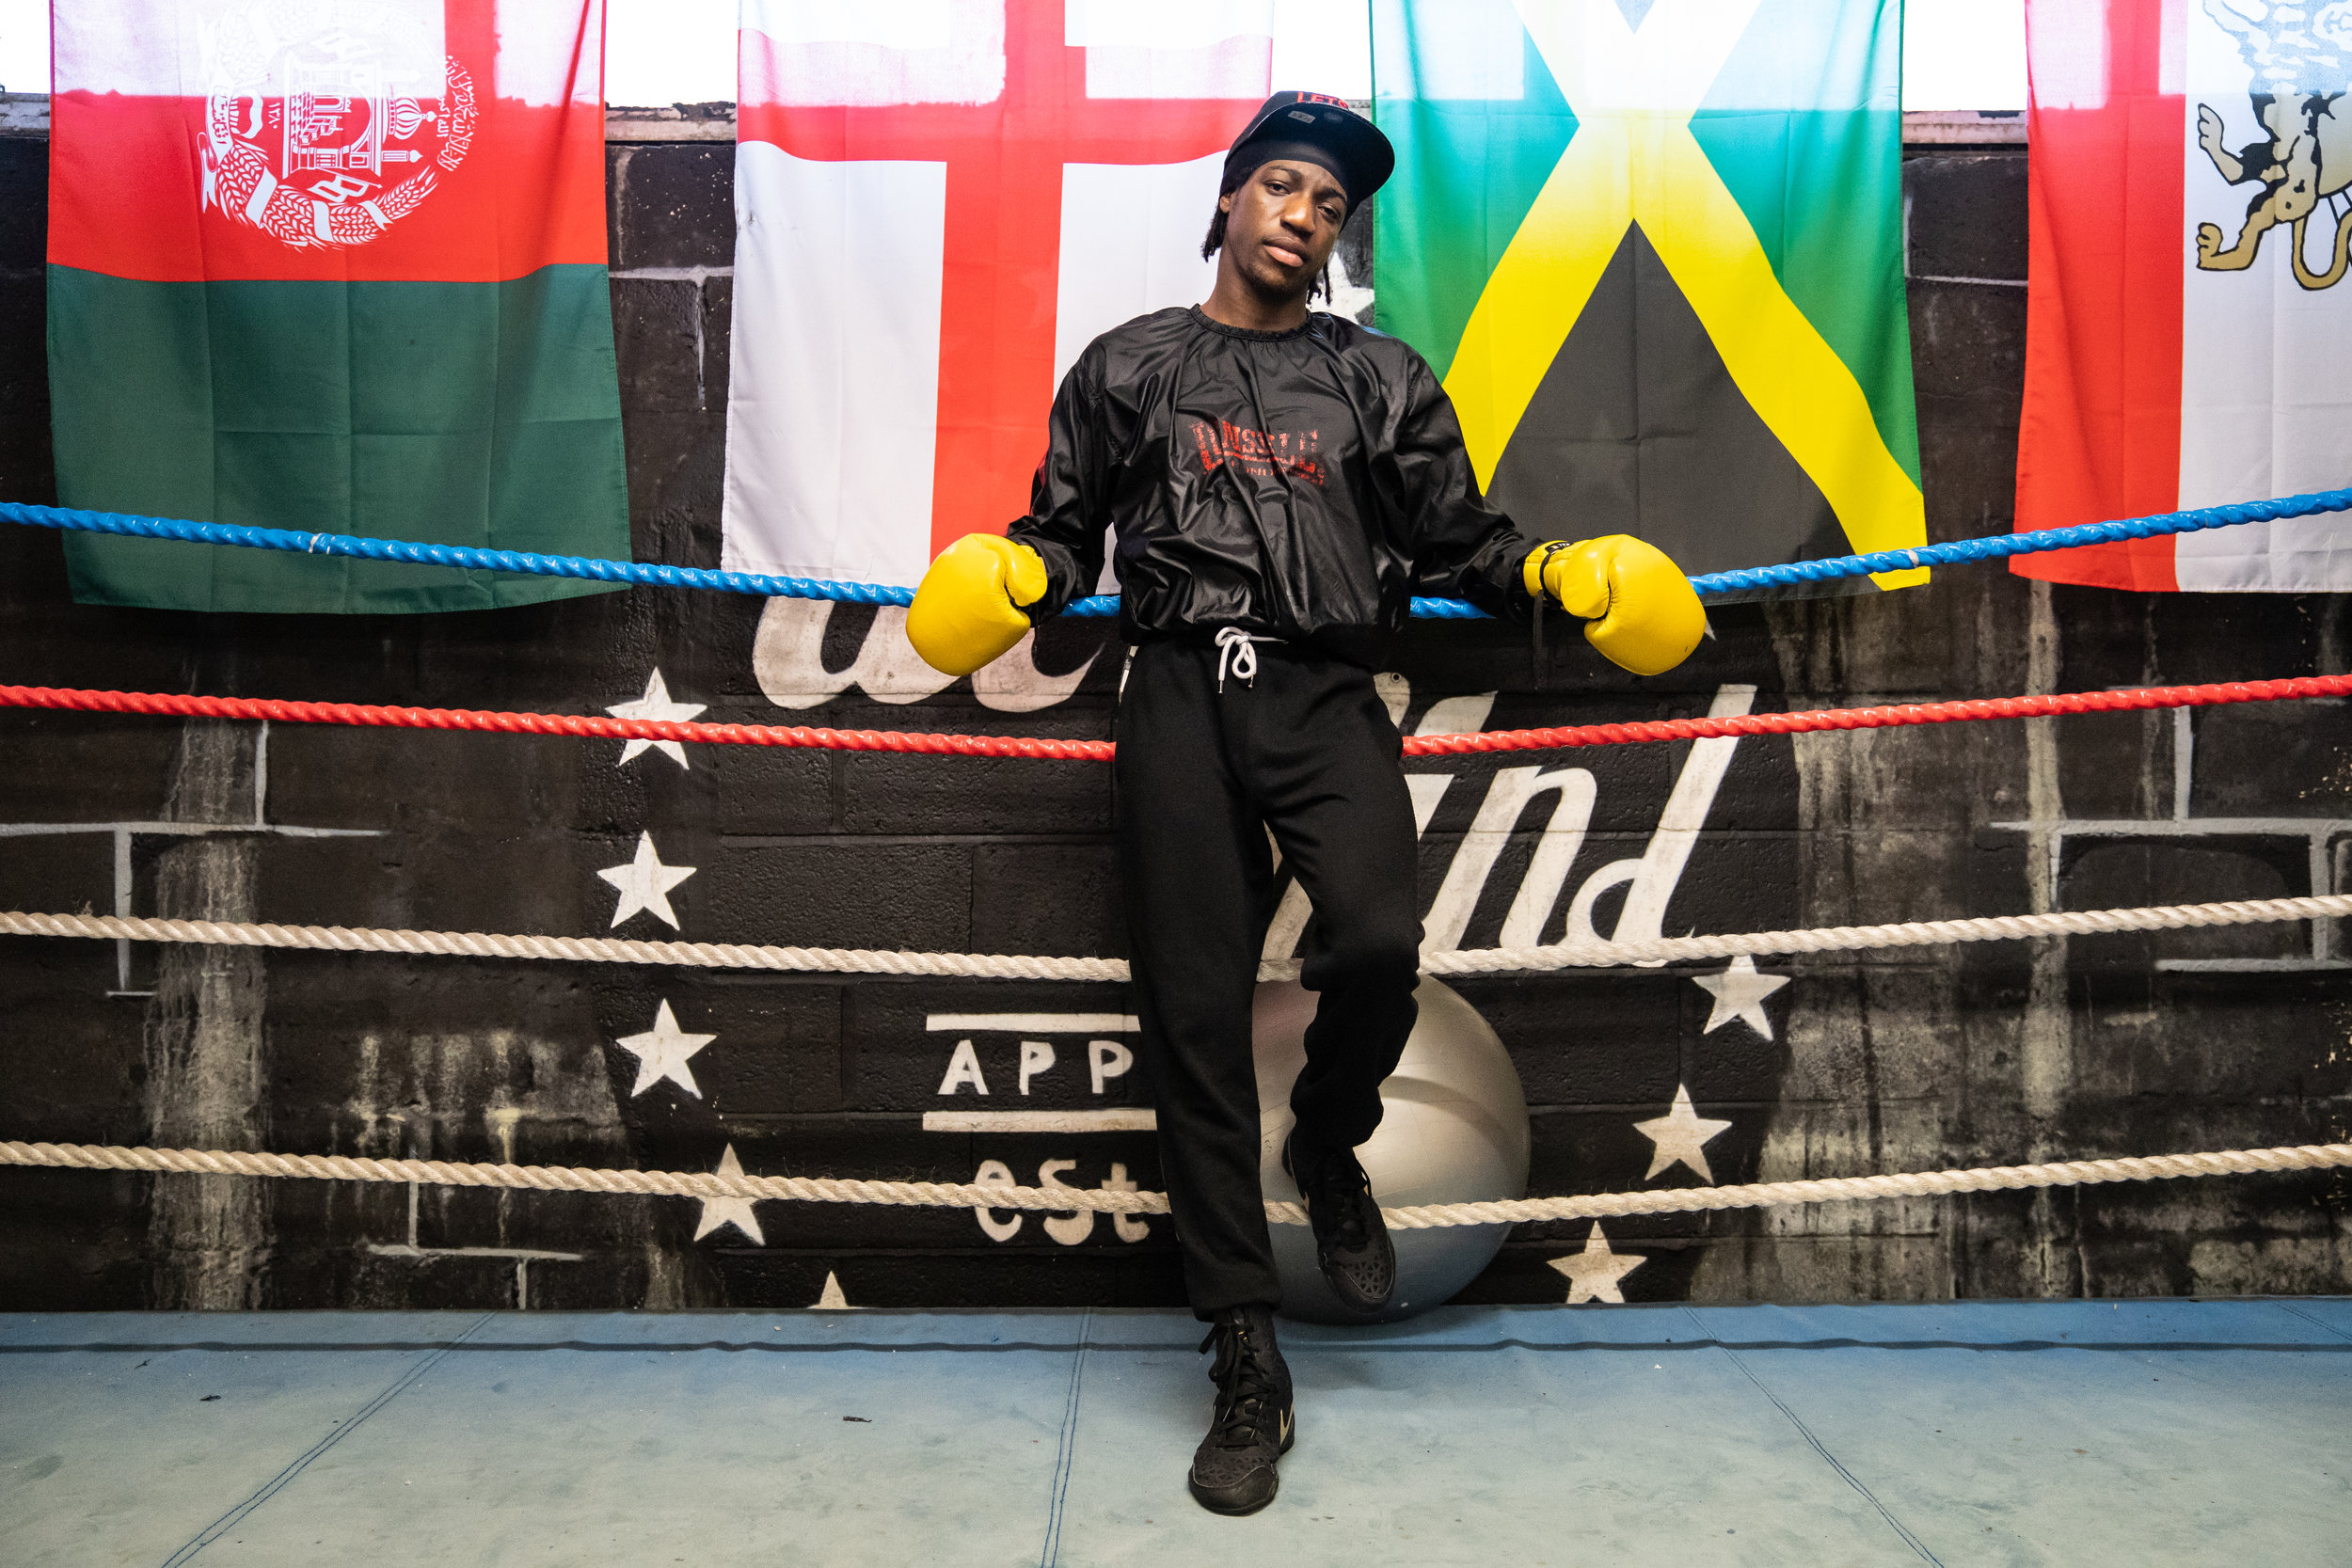 Akeem Ennis Brown - Professional Boxer 